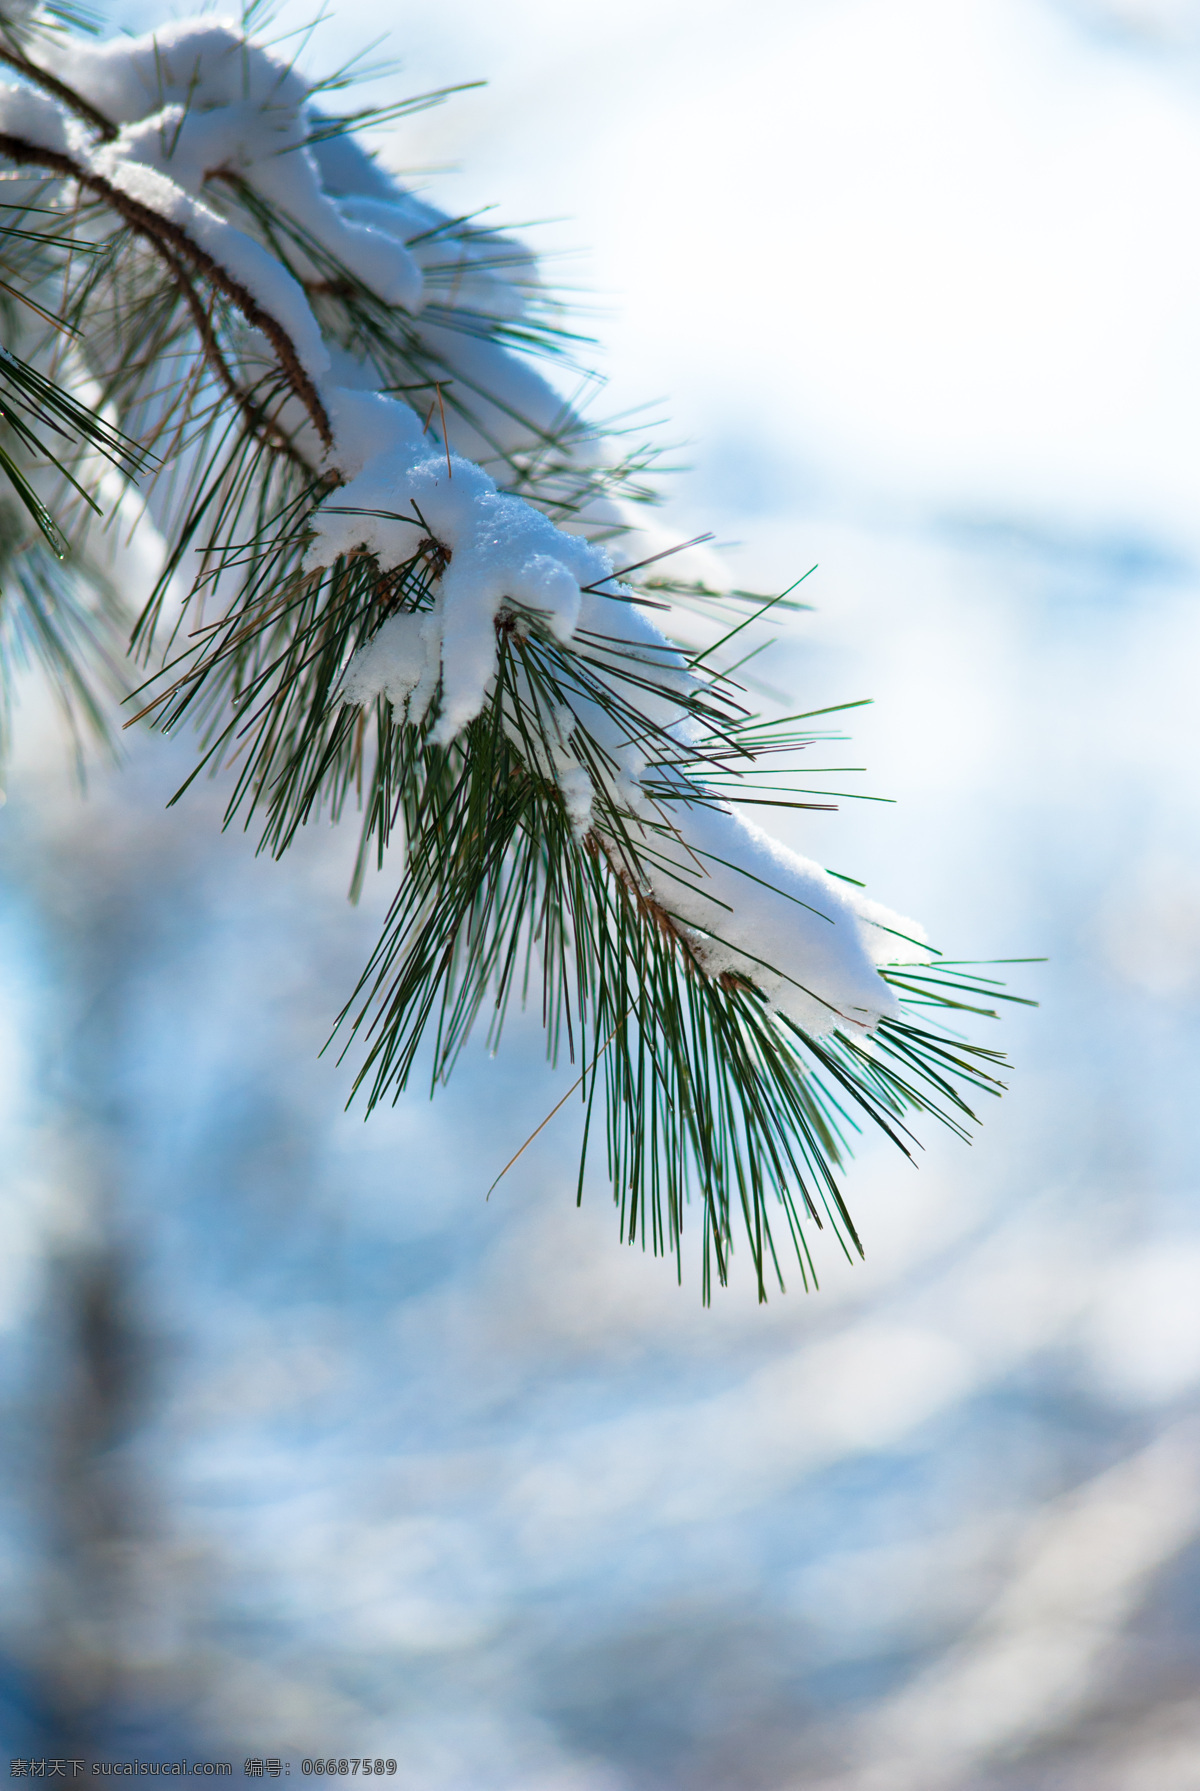 雪松小景 雪景 冬天 松树 雪树 白雪 树枝 蓬松 雪球 自然景观 自然风景